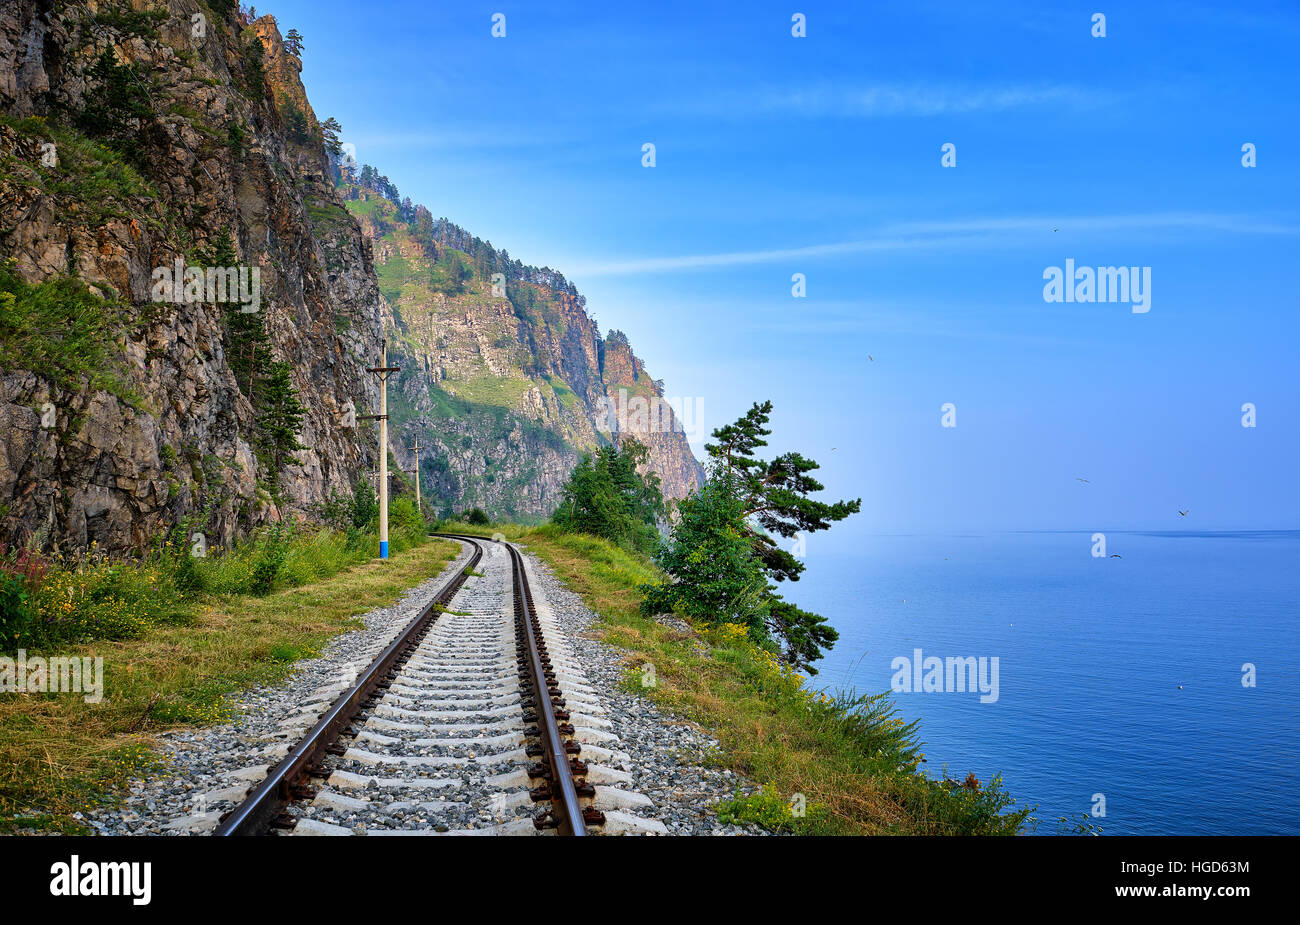 Ligne de chemin de fer à voie unique sur le bord de la terre entre des rochers et du lac Baikal. Région d'Irkoutsk. La Russie Banque D'Images